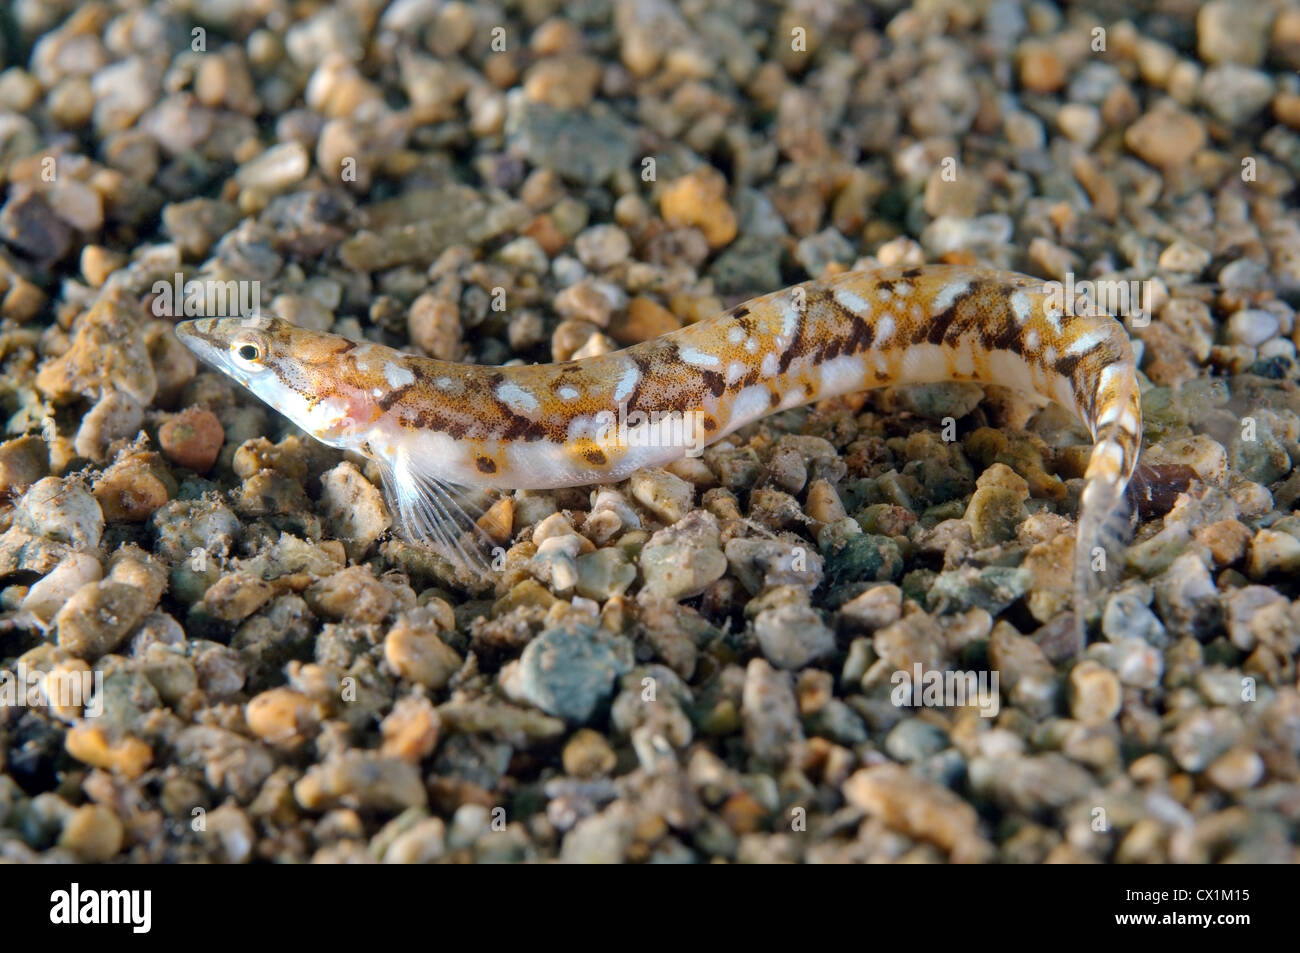 Pavlenkos snake bleonny (Lumpenopsis pavlenkoi, Soldatov). Japan sea, Far East, Primorsky Krai, Russian Federation Stock Photo